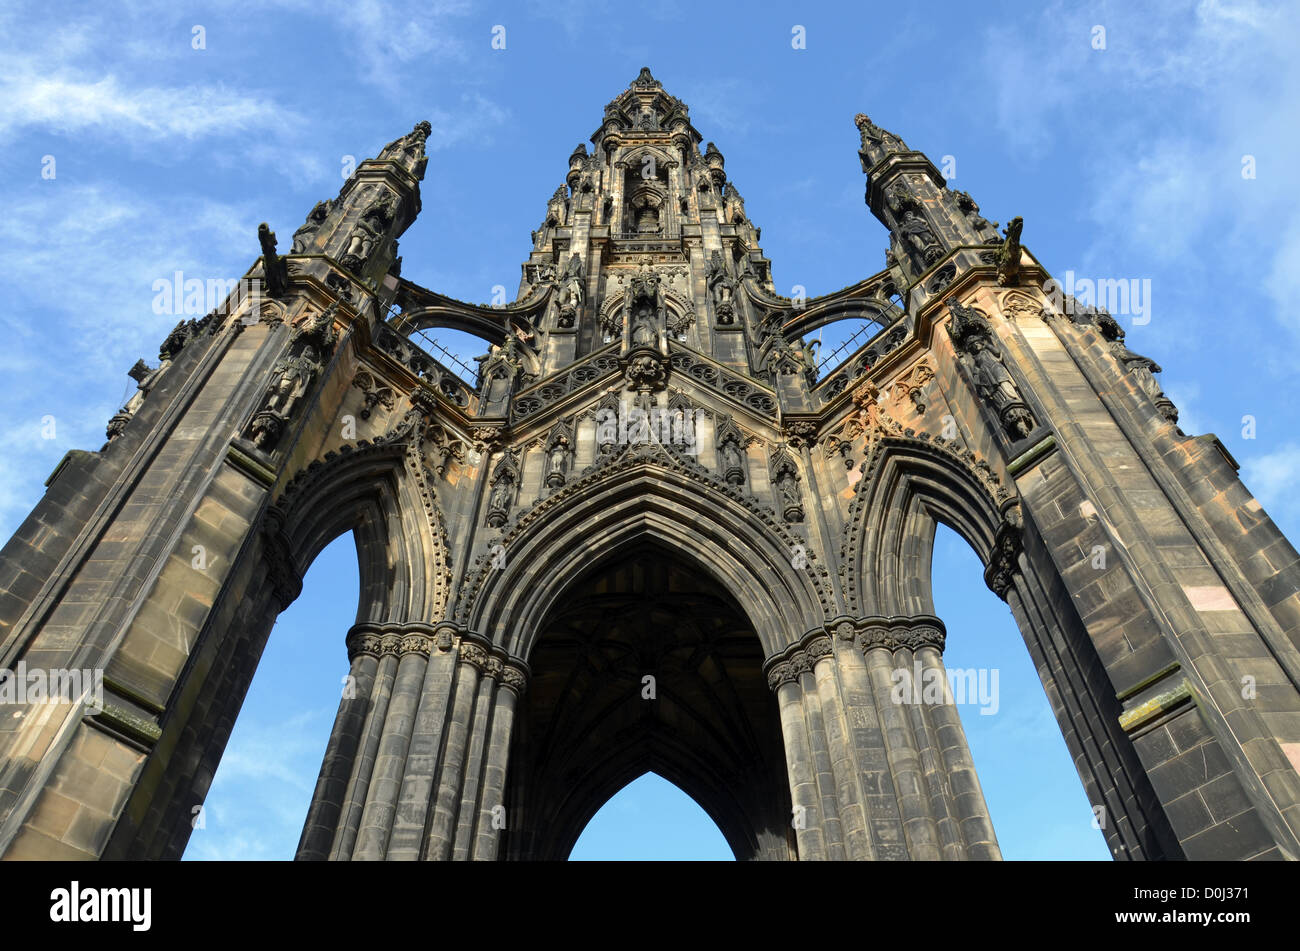 Das Scott Monument ist ein viktorianisches gotisches Denkmal für den schottischen Autor Sir Walter Scott in Princes Street Gardens, Edinburgh, Schottland, Großbritannien. Stockfoto